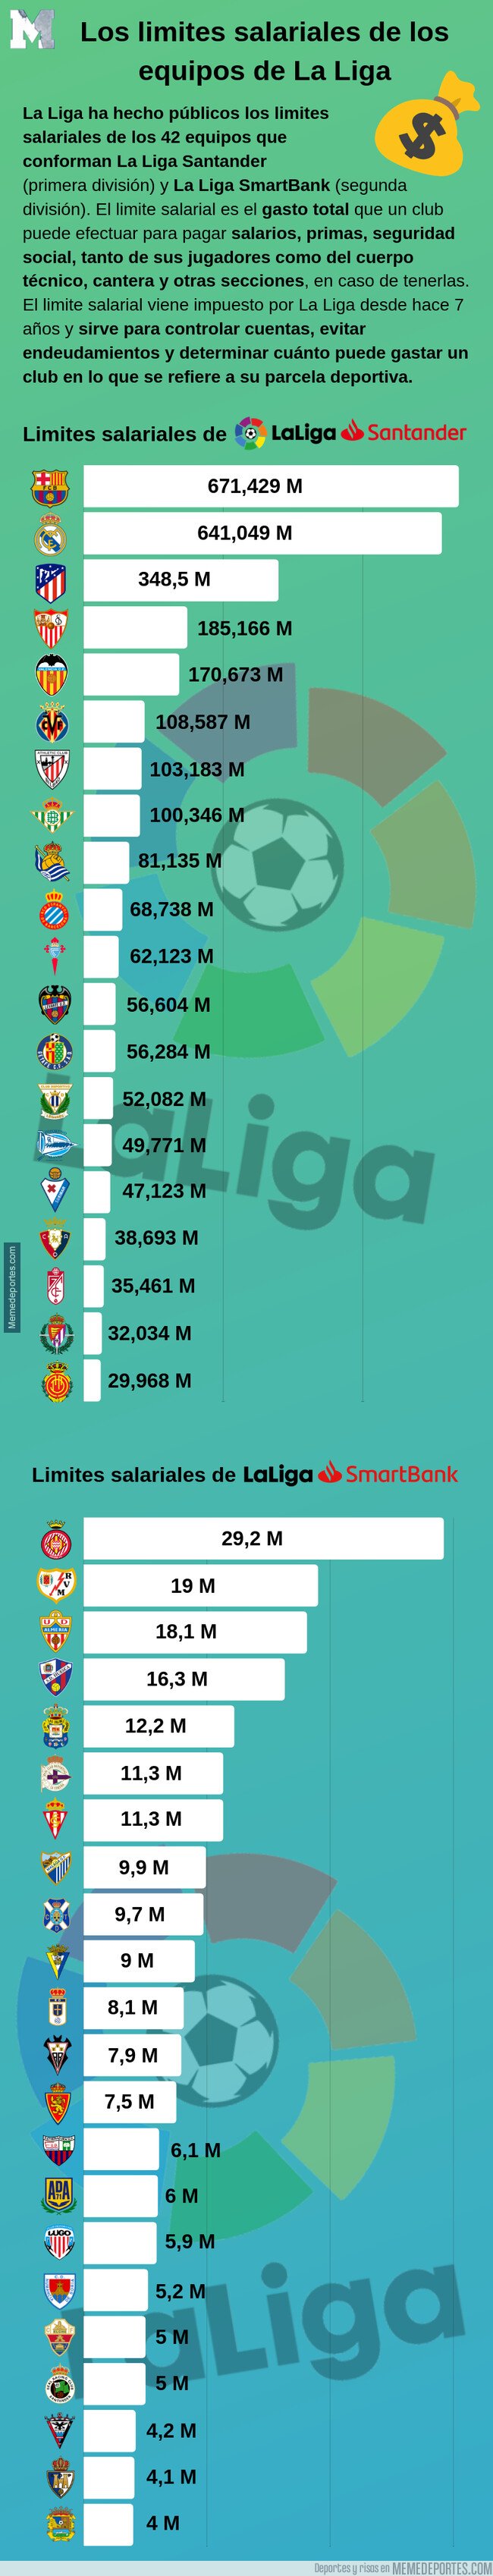 1085397 - Los limites salariales de los equipos de La Liga